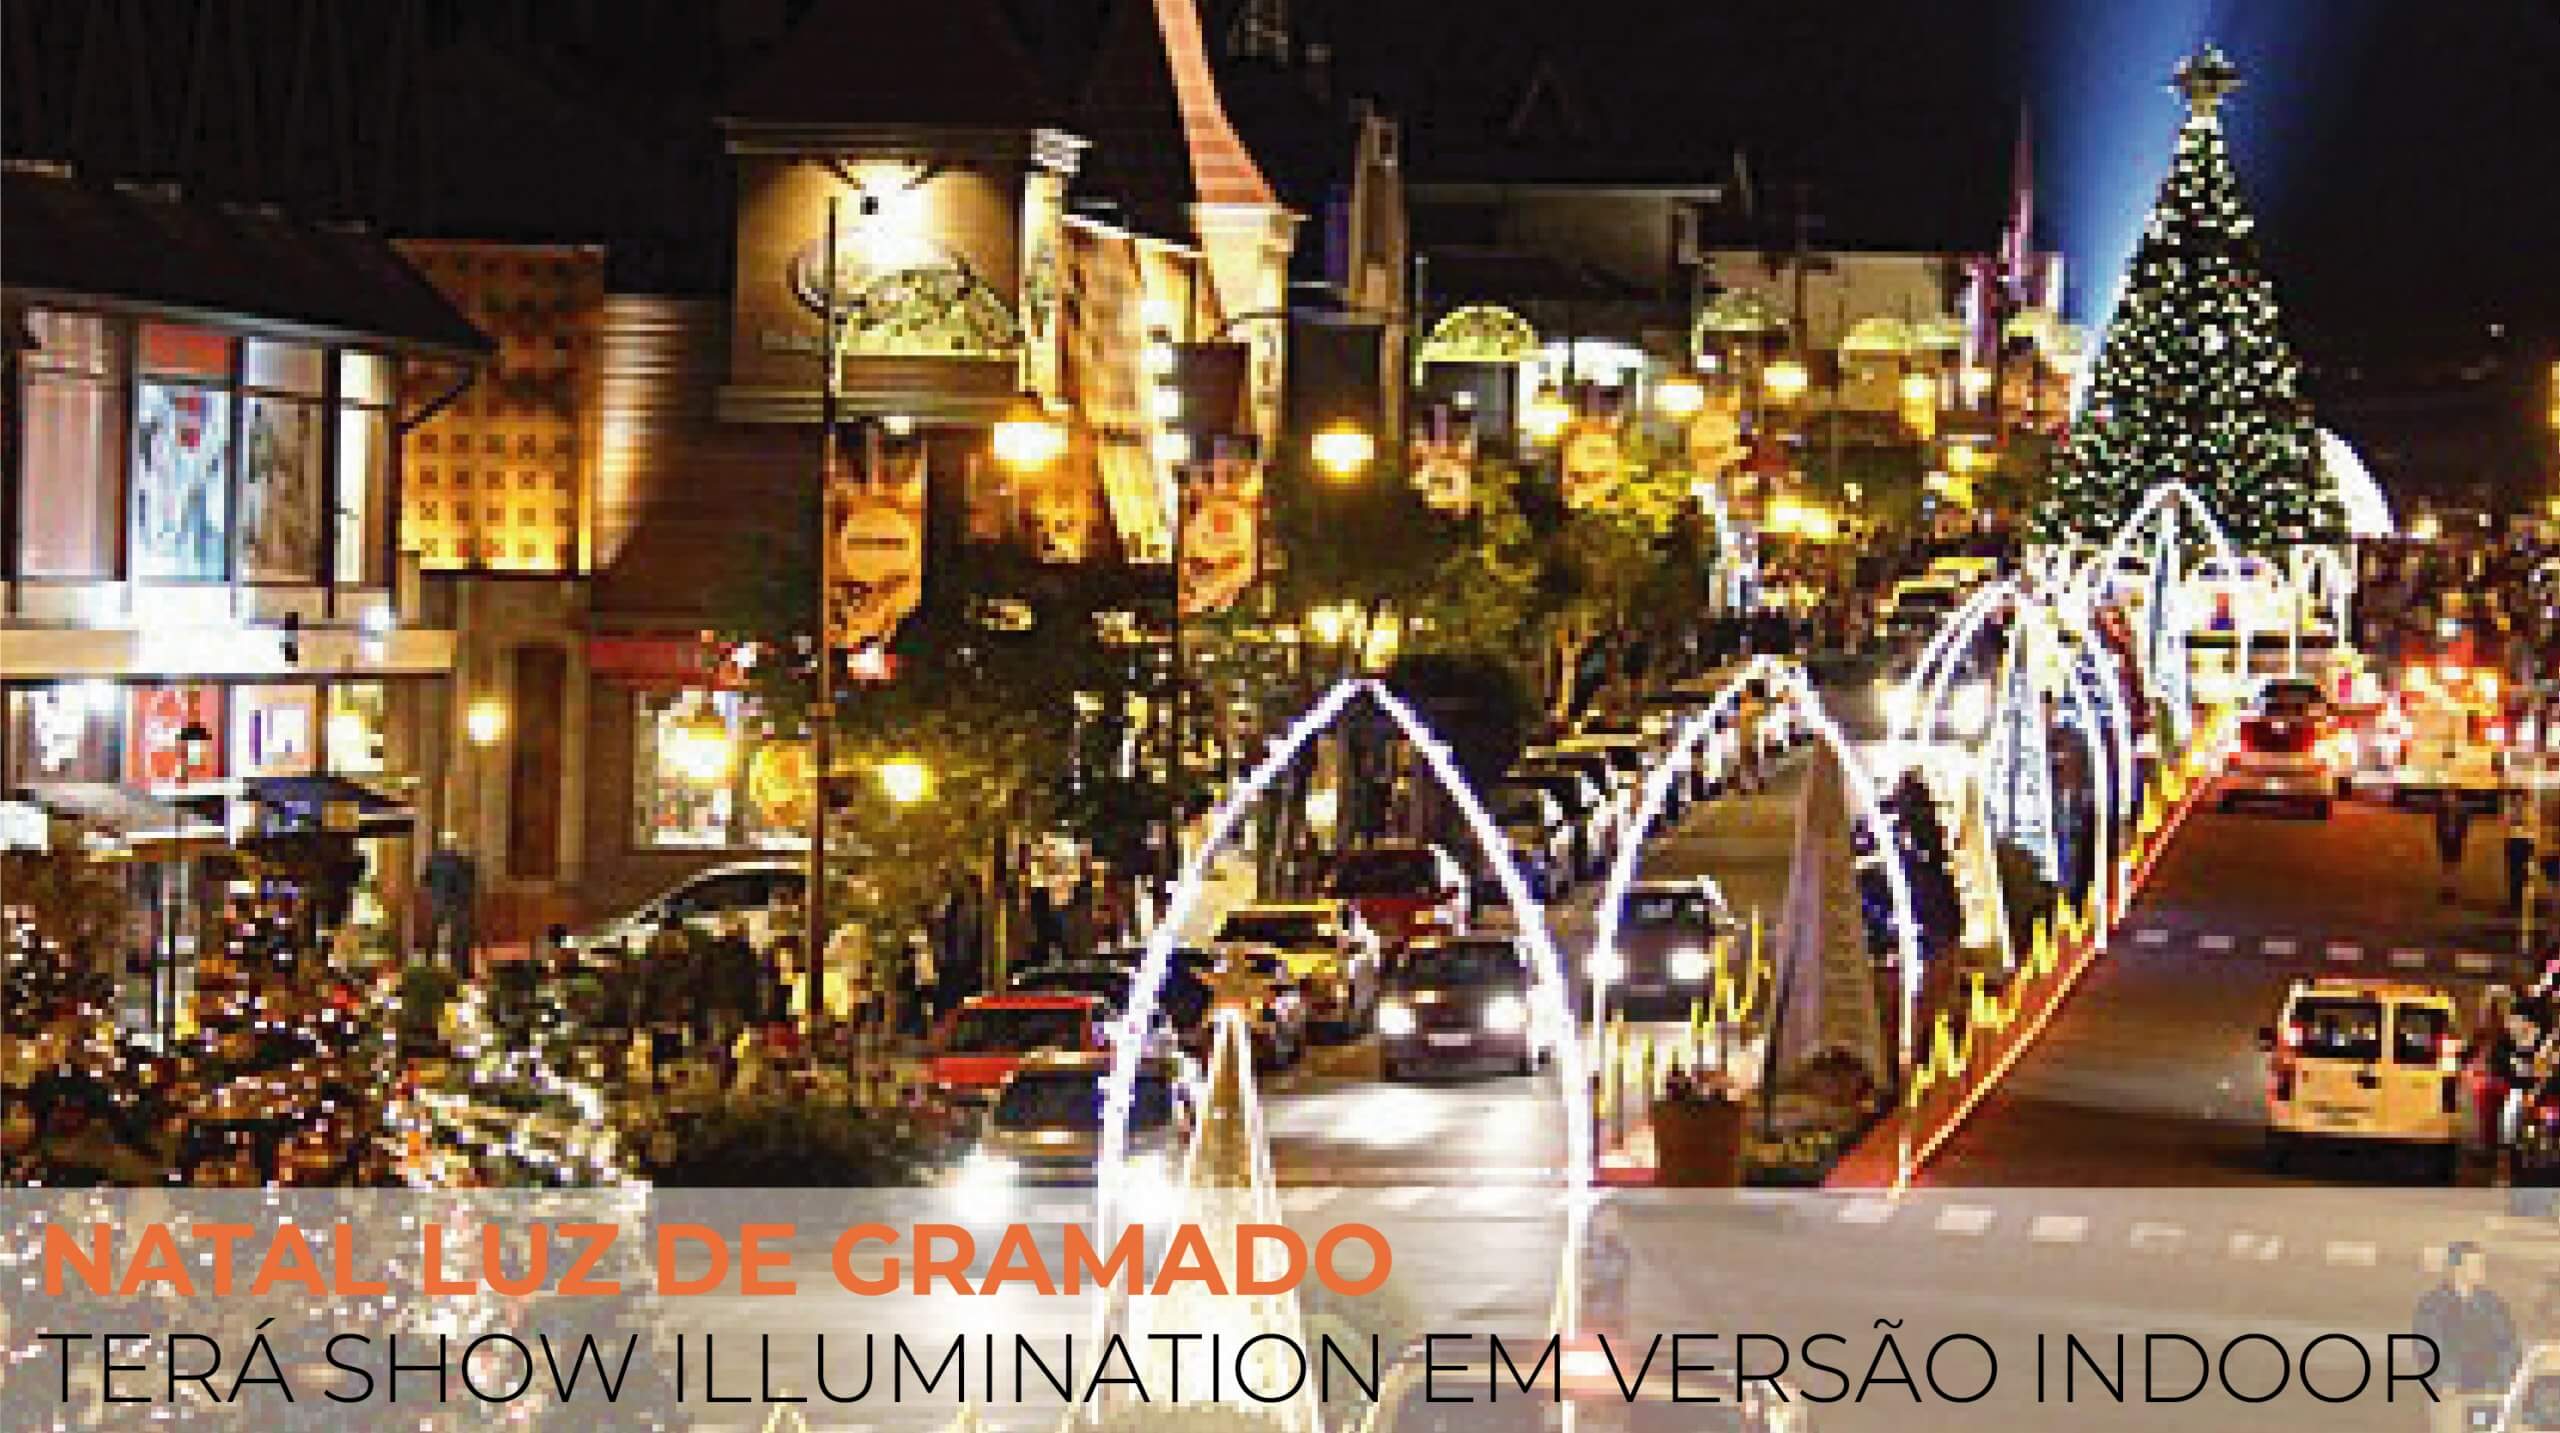 Natal Luz de Gramado terá show Illumination em versão indoor. - Nix Travel